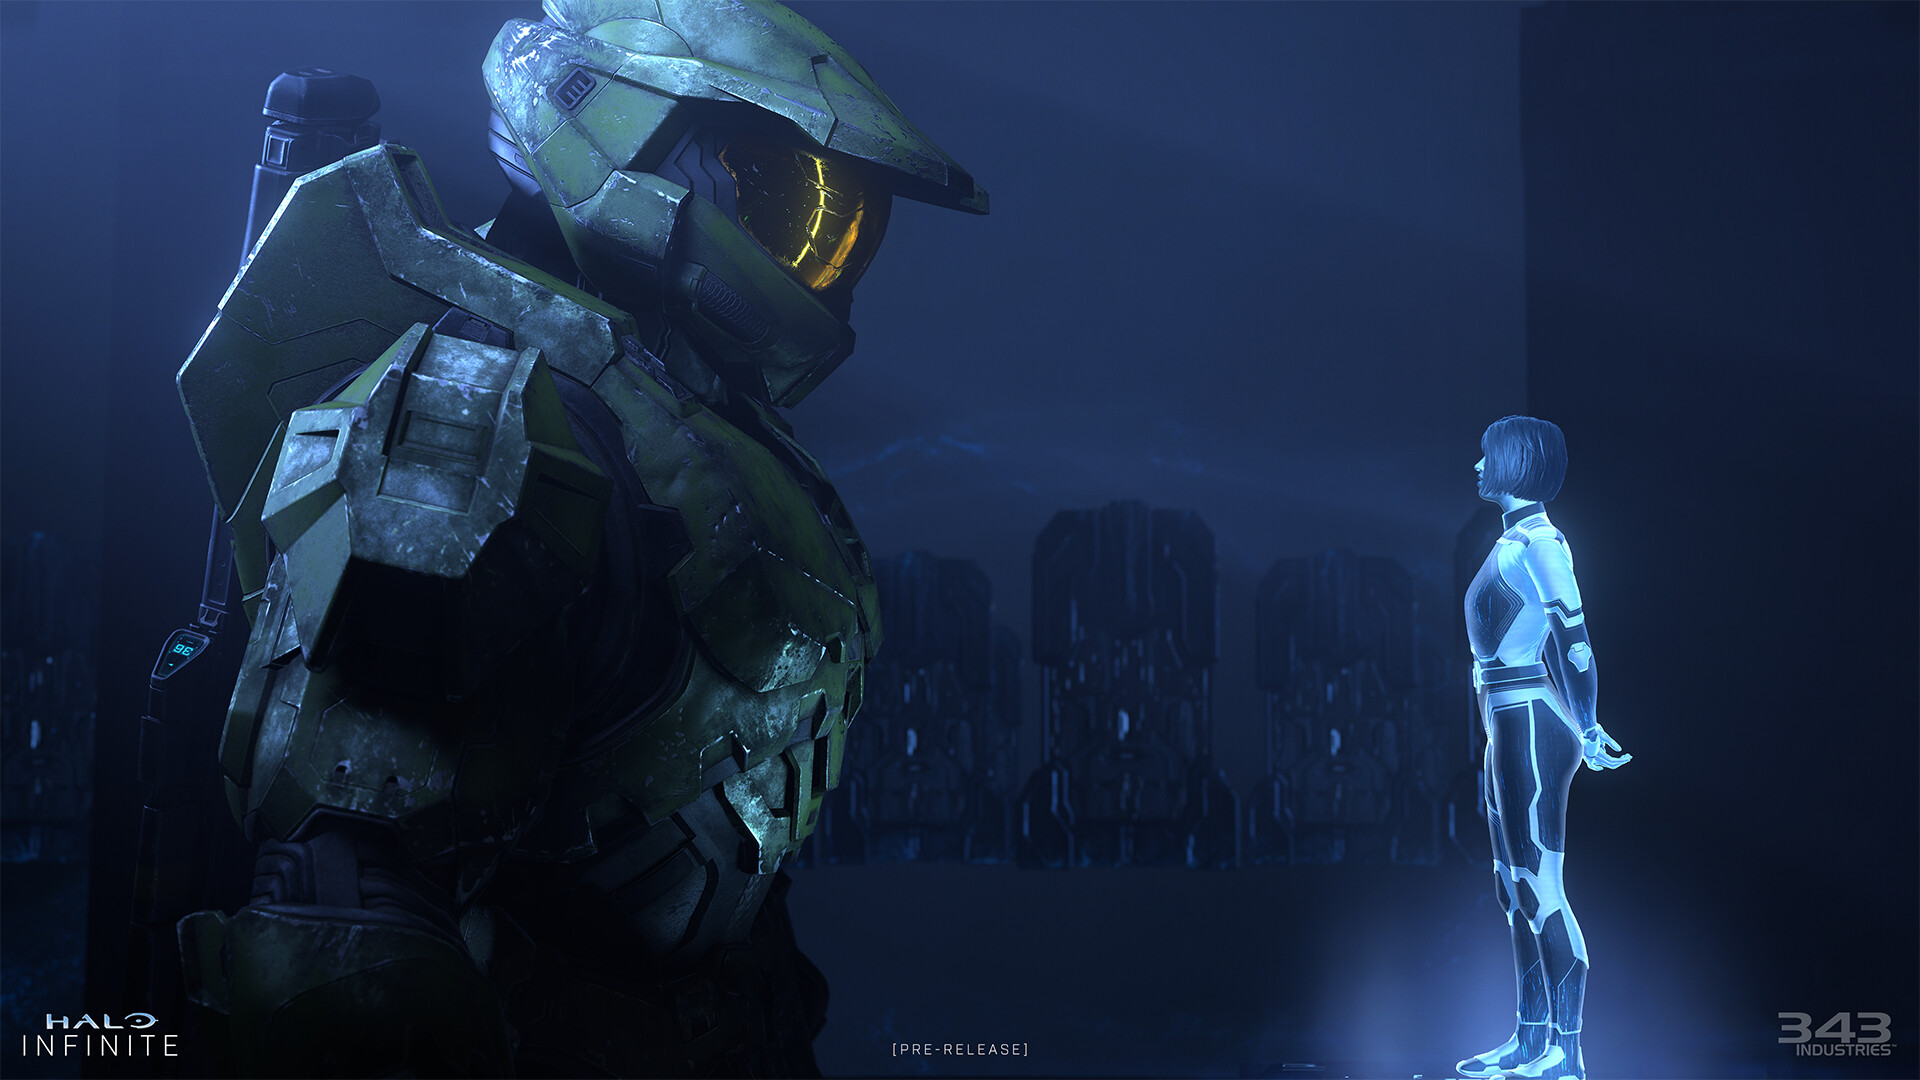 Począwszy od sezonu 3, sezony Halo Infinite będą "spójne" - zapewnia 343 Industries